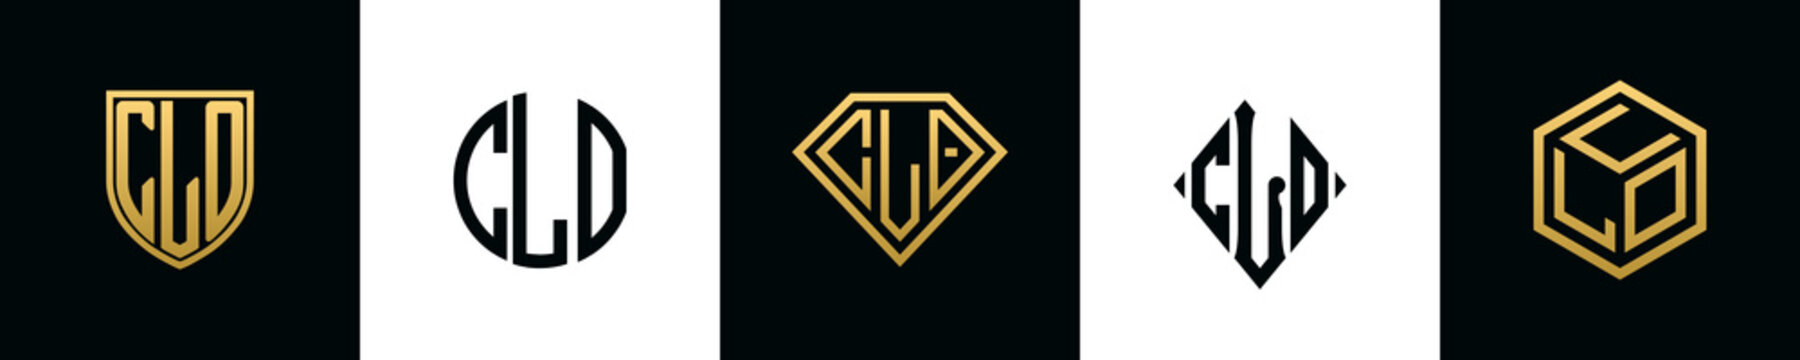 Initial letters CLO logo designs Bundle